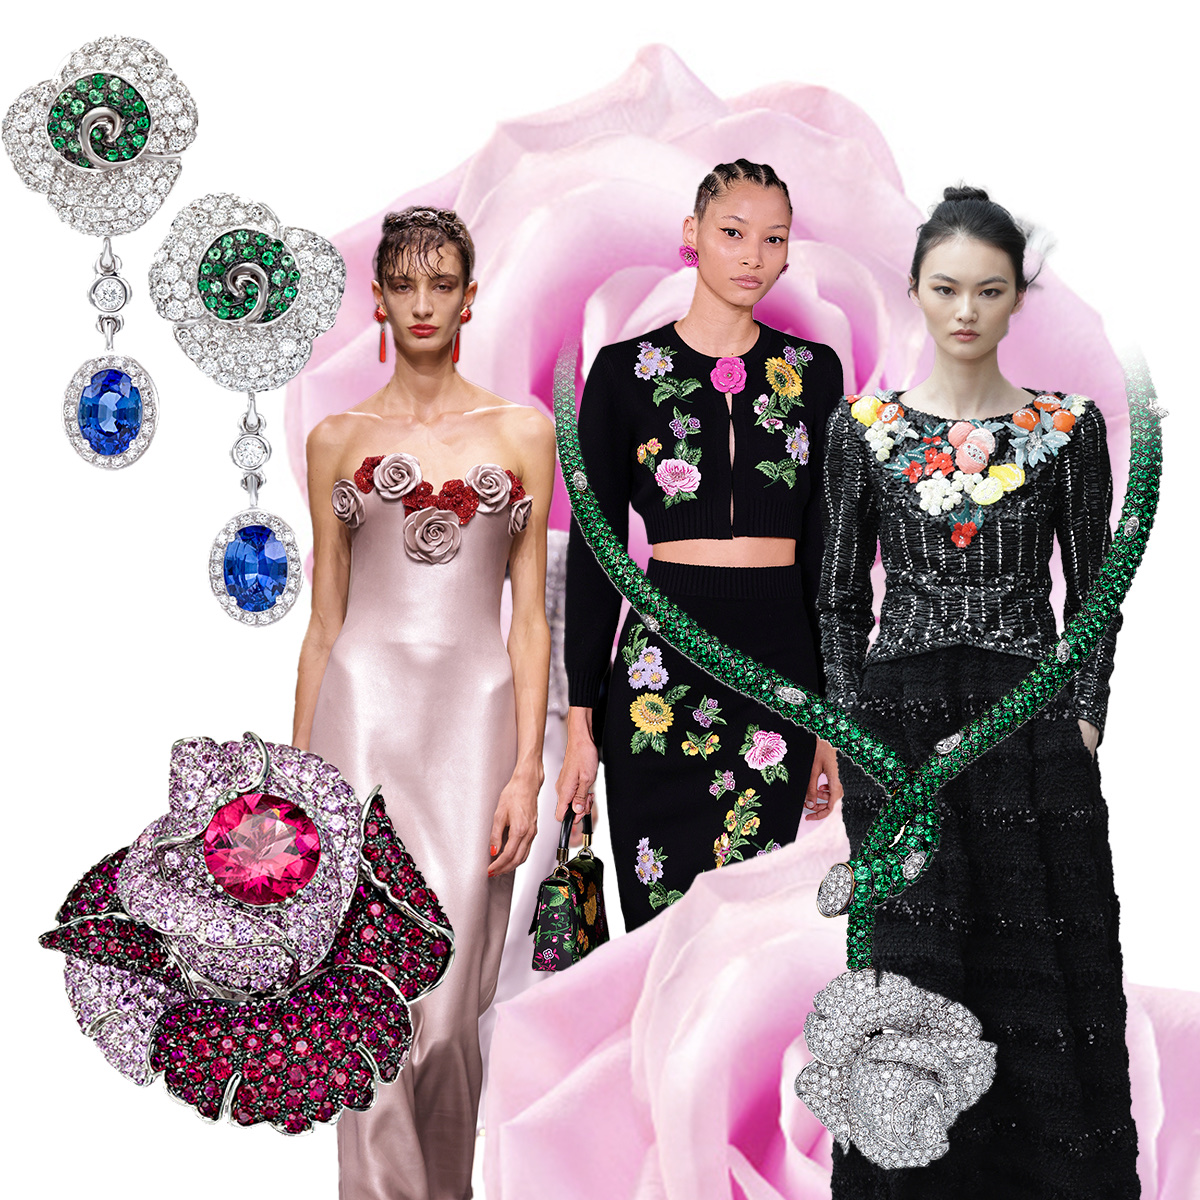 PICCHIOTTI Rose Garden earrings in diamond, sapphire, and tsavorite, Giorgio Armani Privé F/W 2023-24 (Getty), Carolina Herrera F/W 2023-24 (Getty), Chanel F/W 2023-24 (Getty), PICCHIOTTI Rose Garden necklace